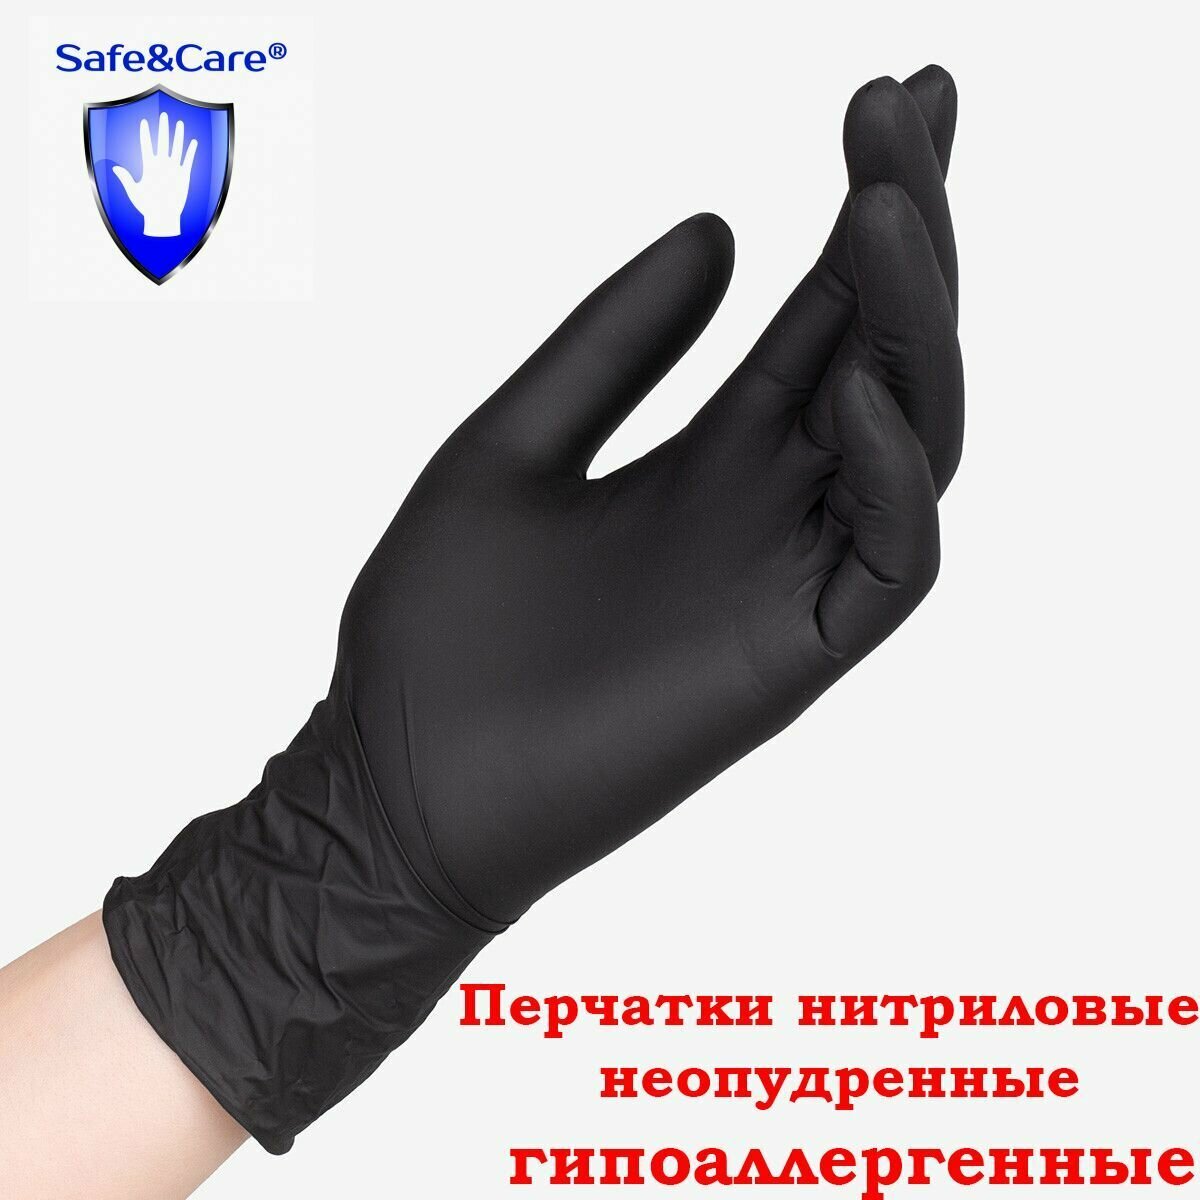 Перчатки Safe&Care нитриловые черные ZN 318 10 штук размер S